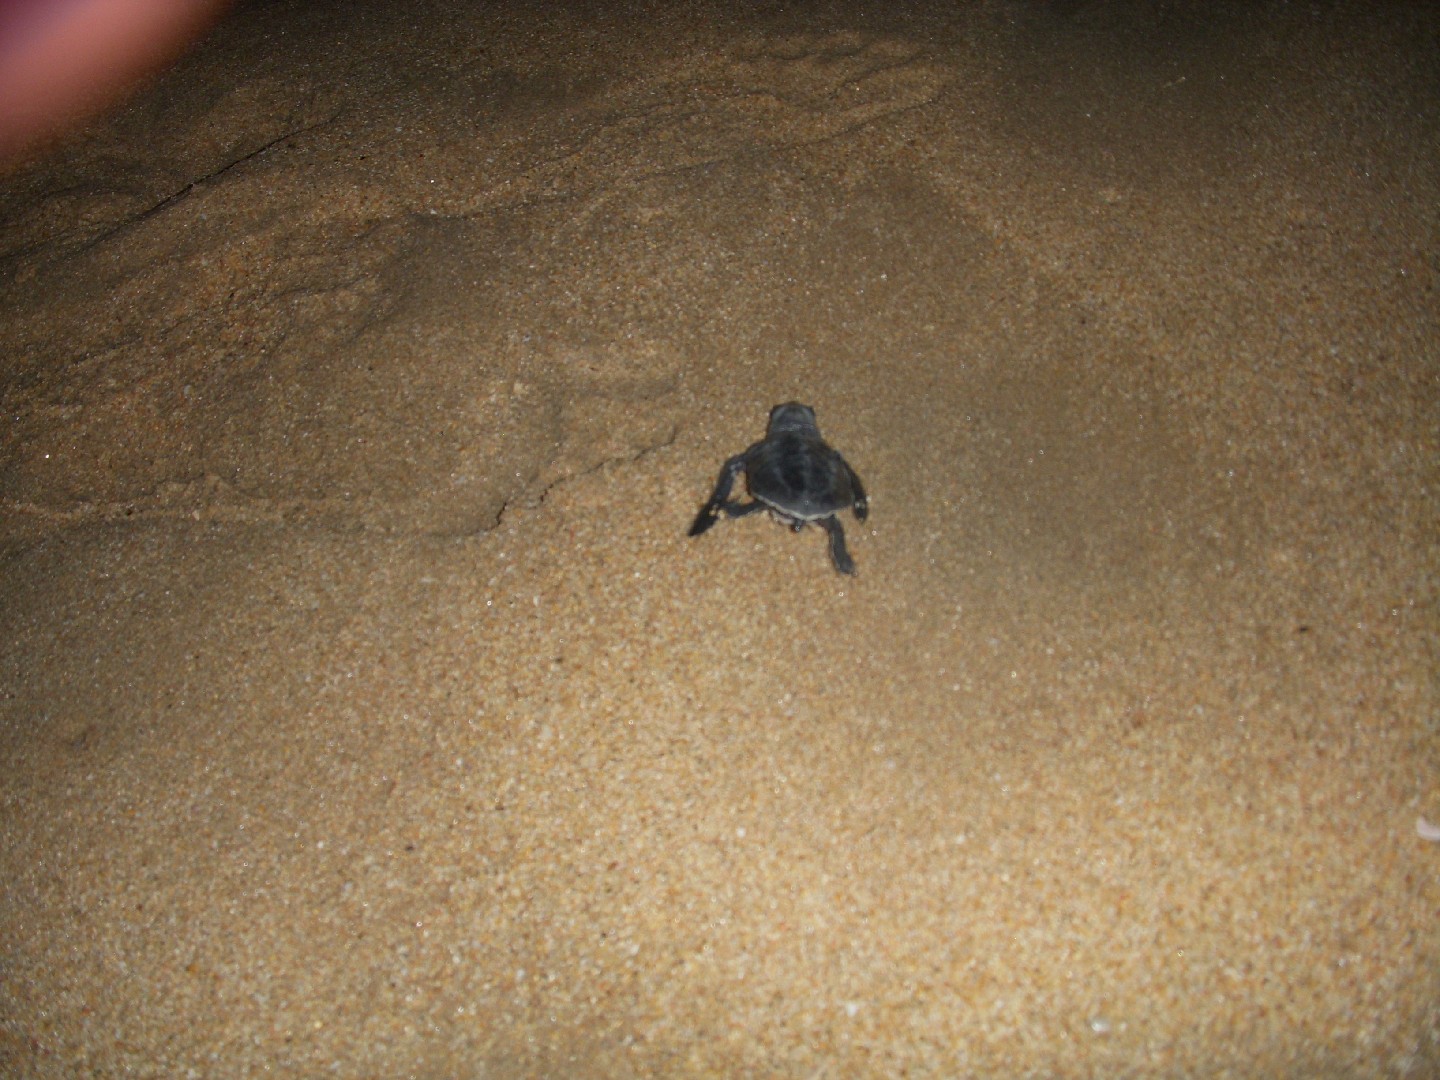 Olive ridley sea turtle (Lepidochelys olivacea)